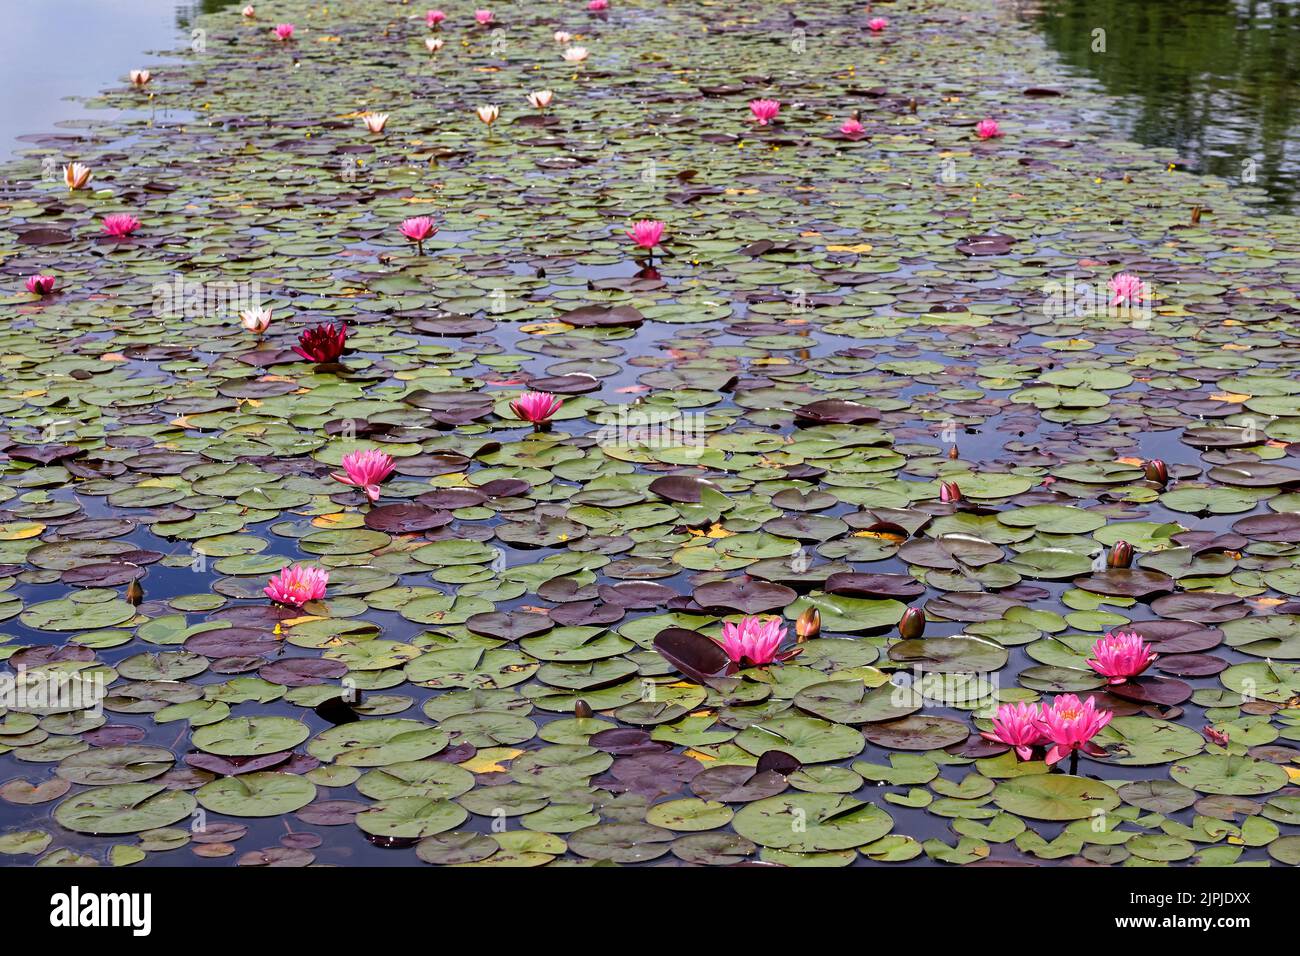 lake, water lily, seerosengewächs, lakes, water lilies, waterlilie, waterlilies Stock Photo